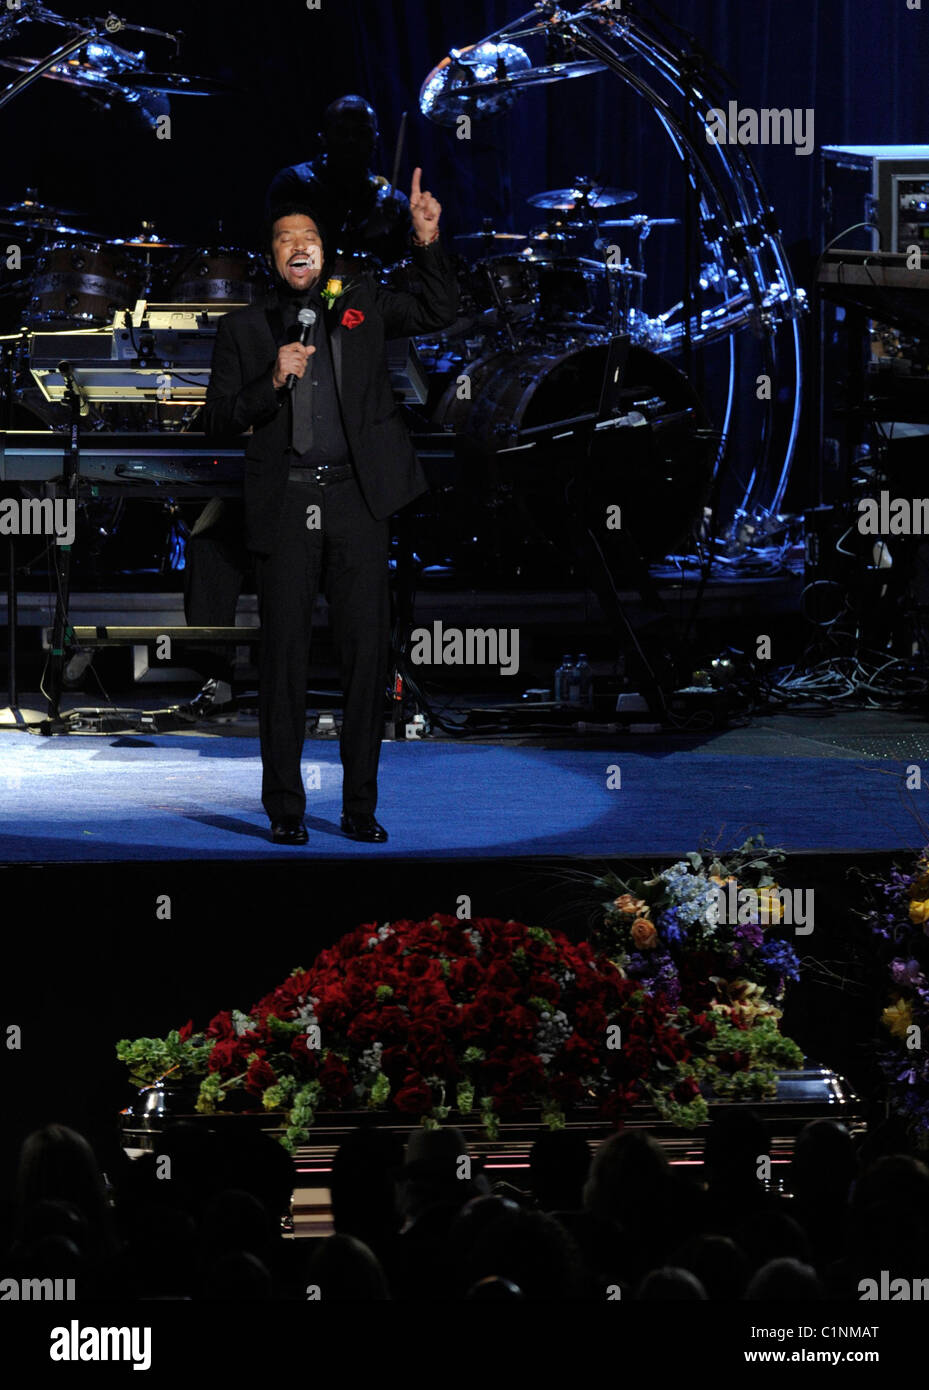 Snger Lionel Richie le service commémoratif pour le King of Pop, Michael Jackson, au Staples Center de Los Angeles, Californie - Banque D'Images